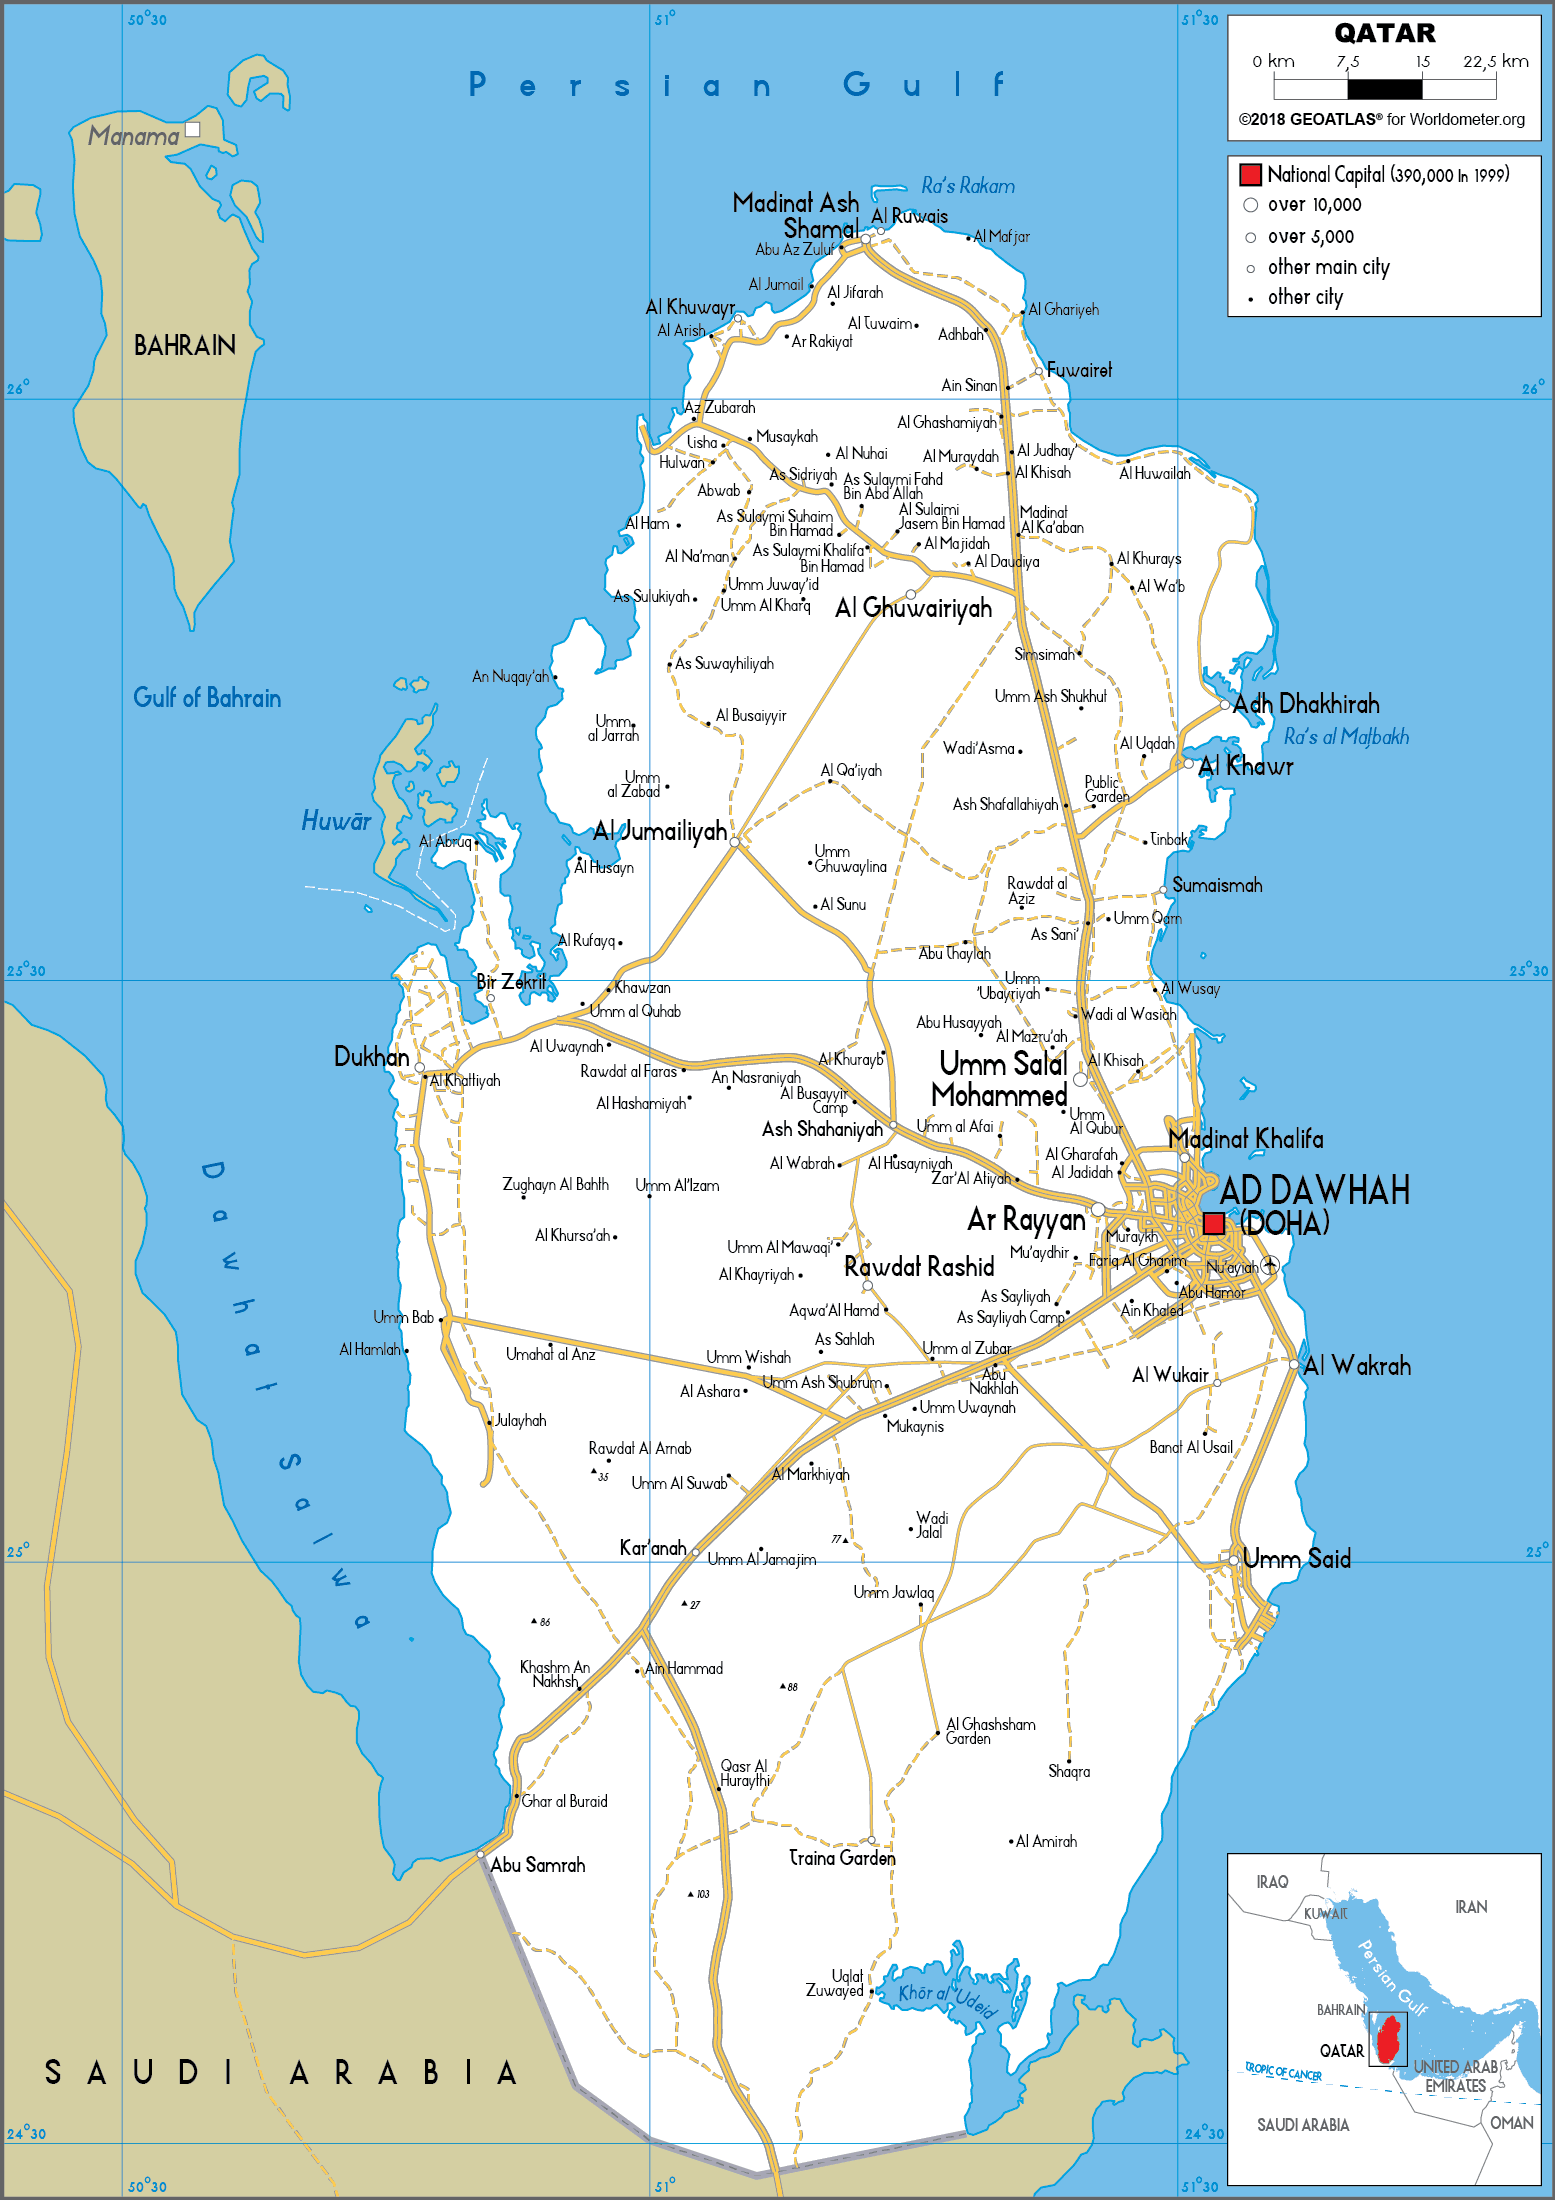 Bạn muốn tìm hiểu thêm về đất nước Qatar trong chuyến đi sắp tới? Hãy xem bản đồ Qatar để có cái nhìn toàn cảnh về đất nước này và lên kế hoạch cho hành trình của mình.